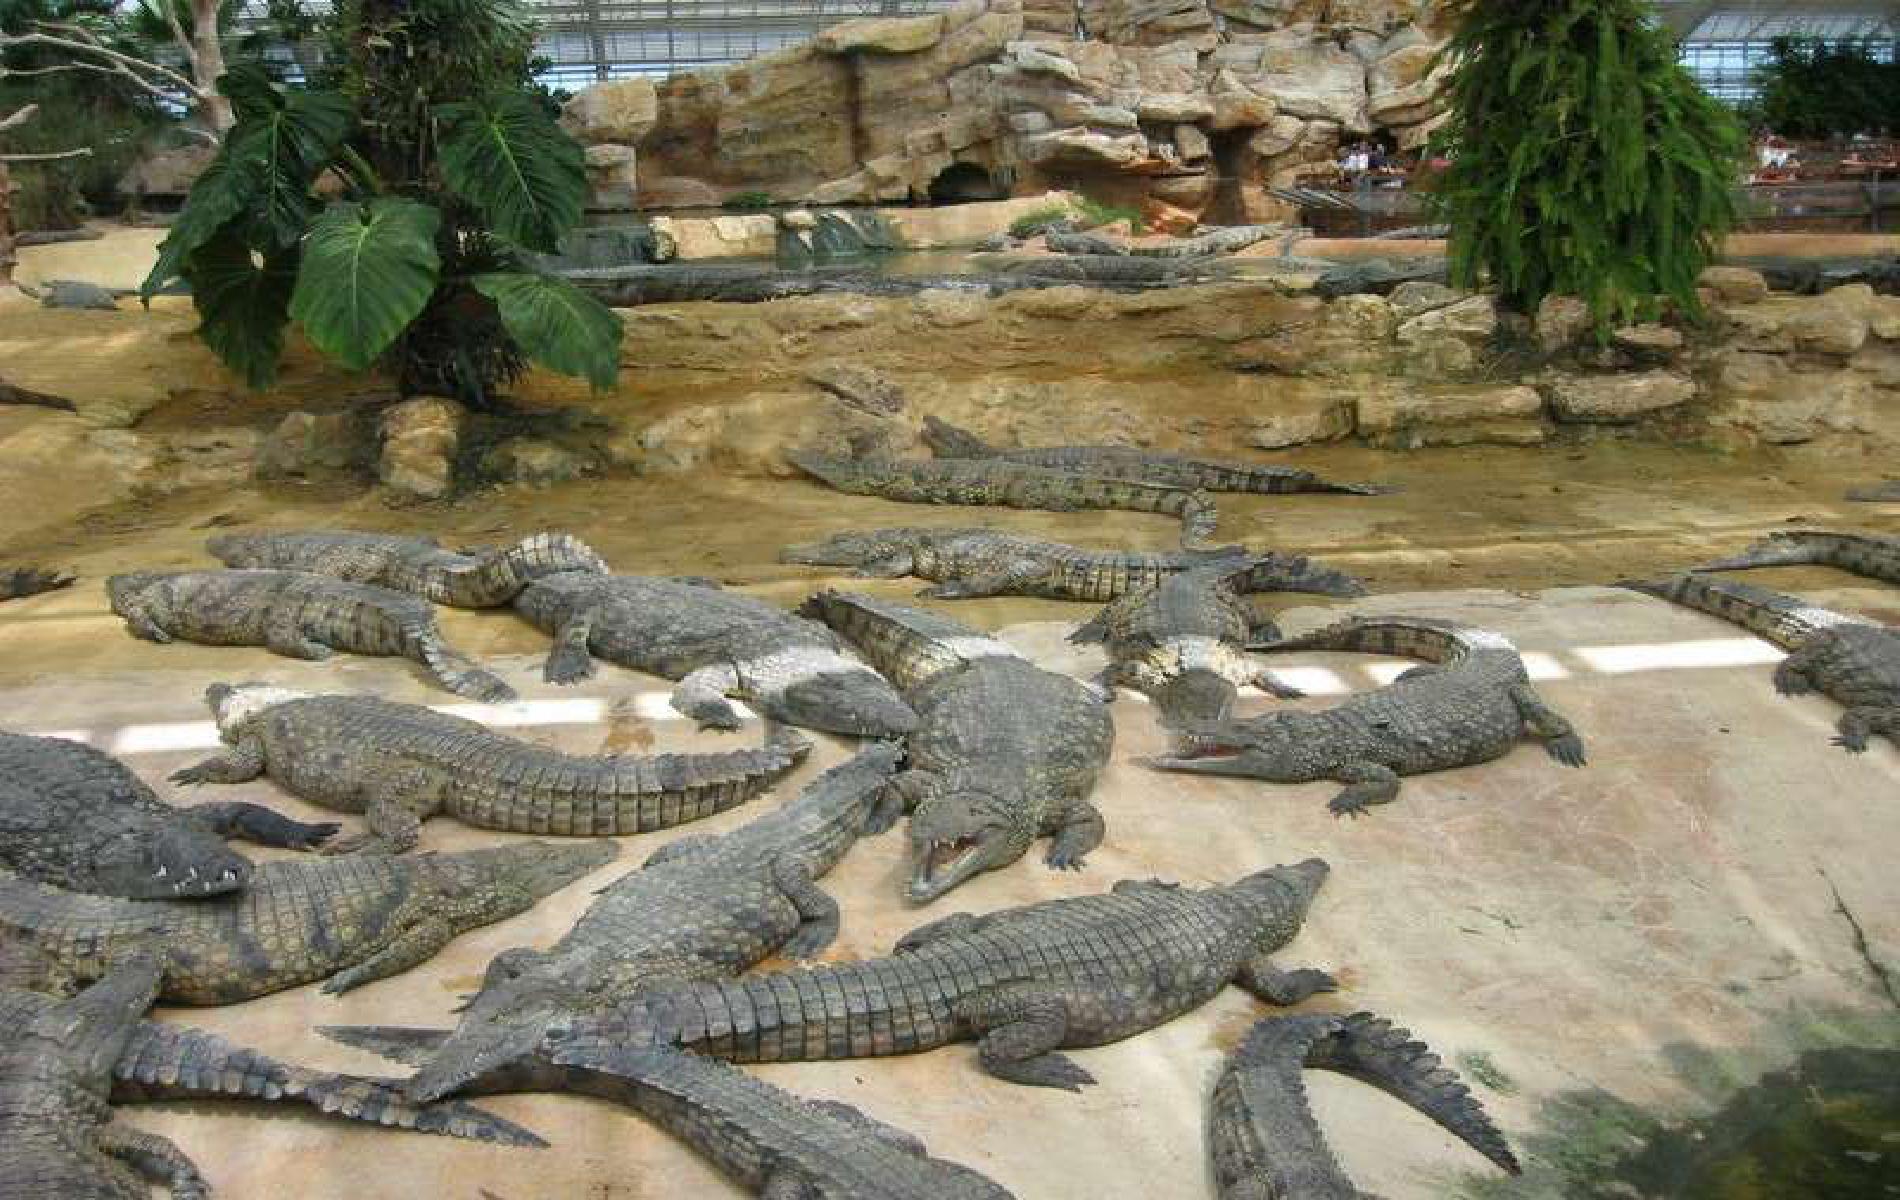 The Crocodile Farm in Pierrelatte